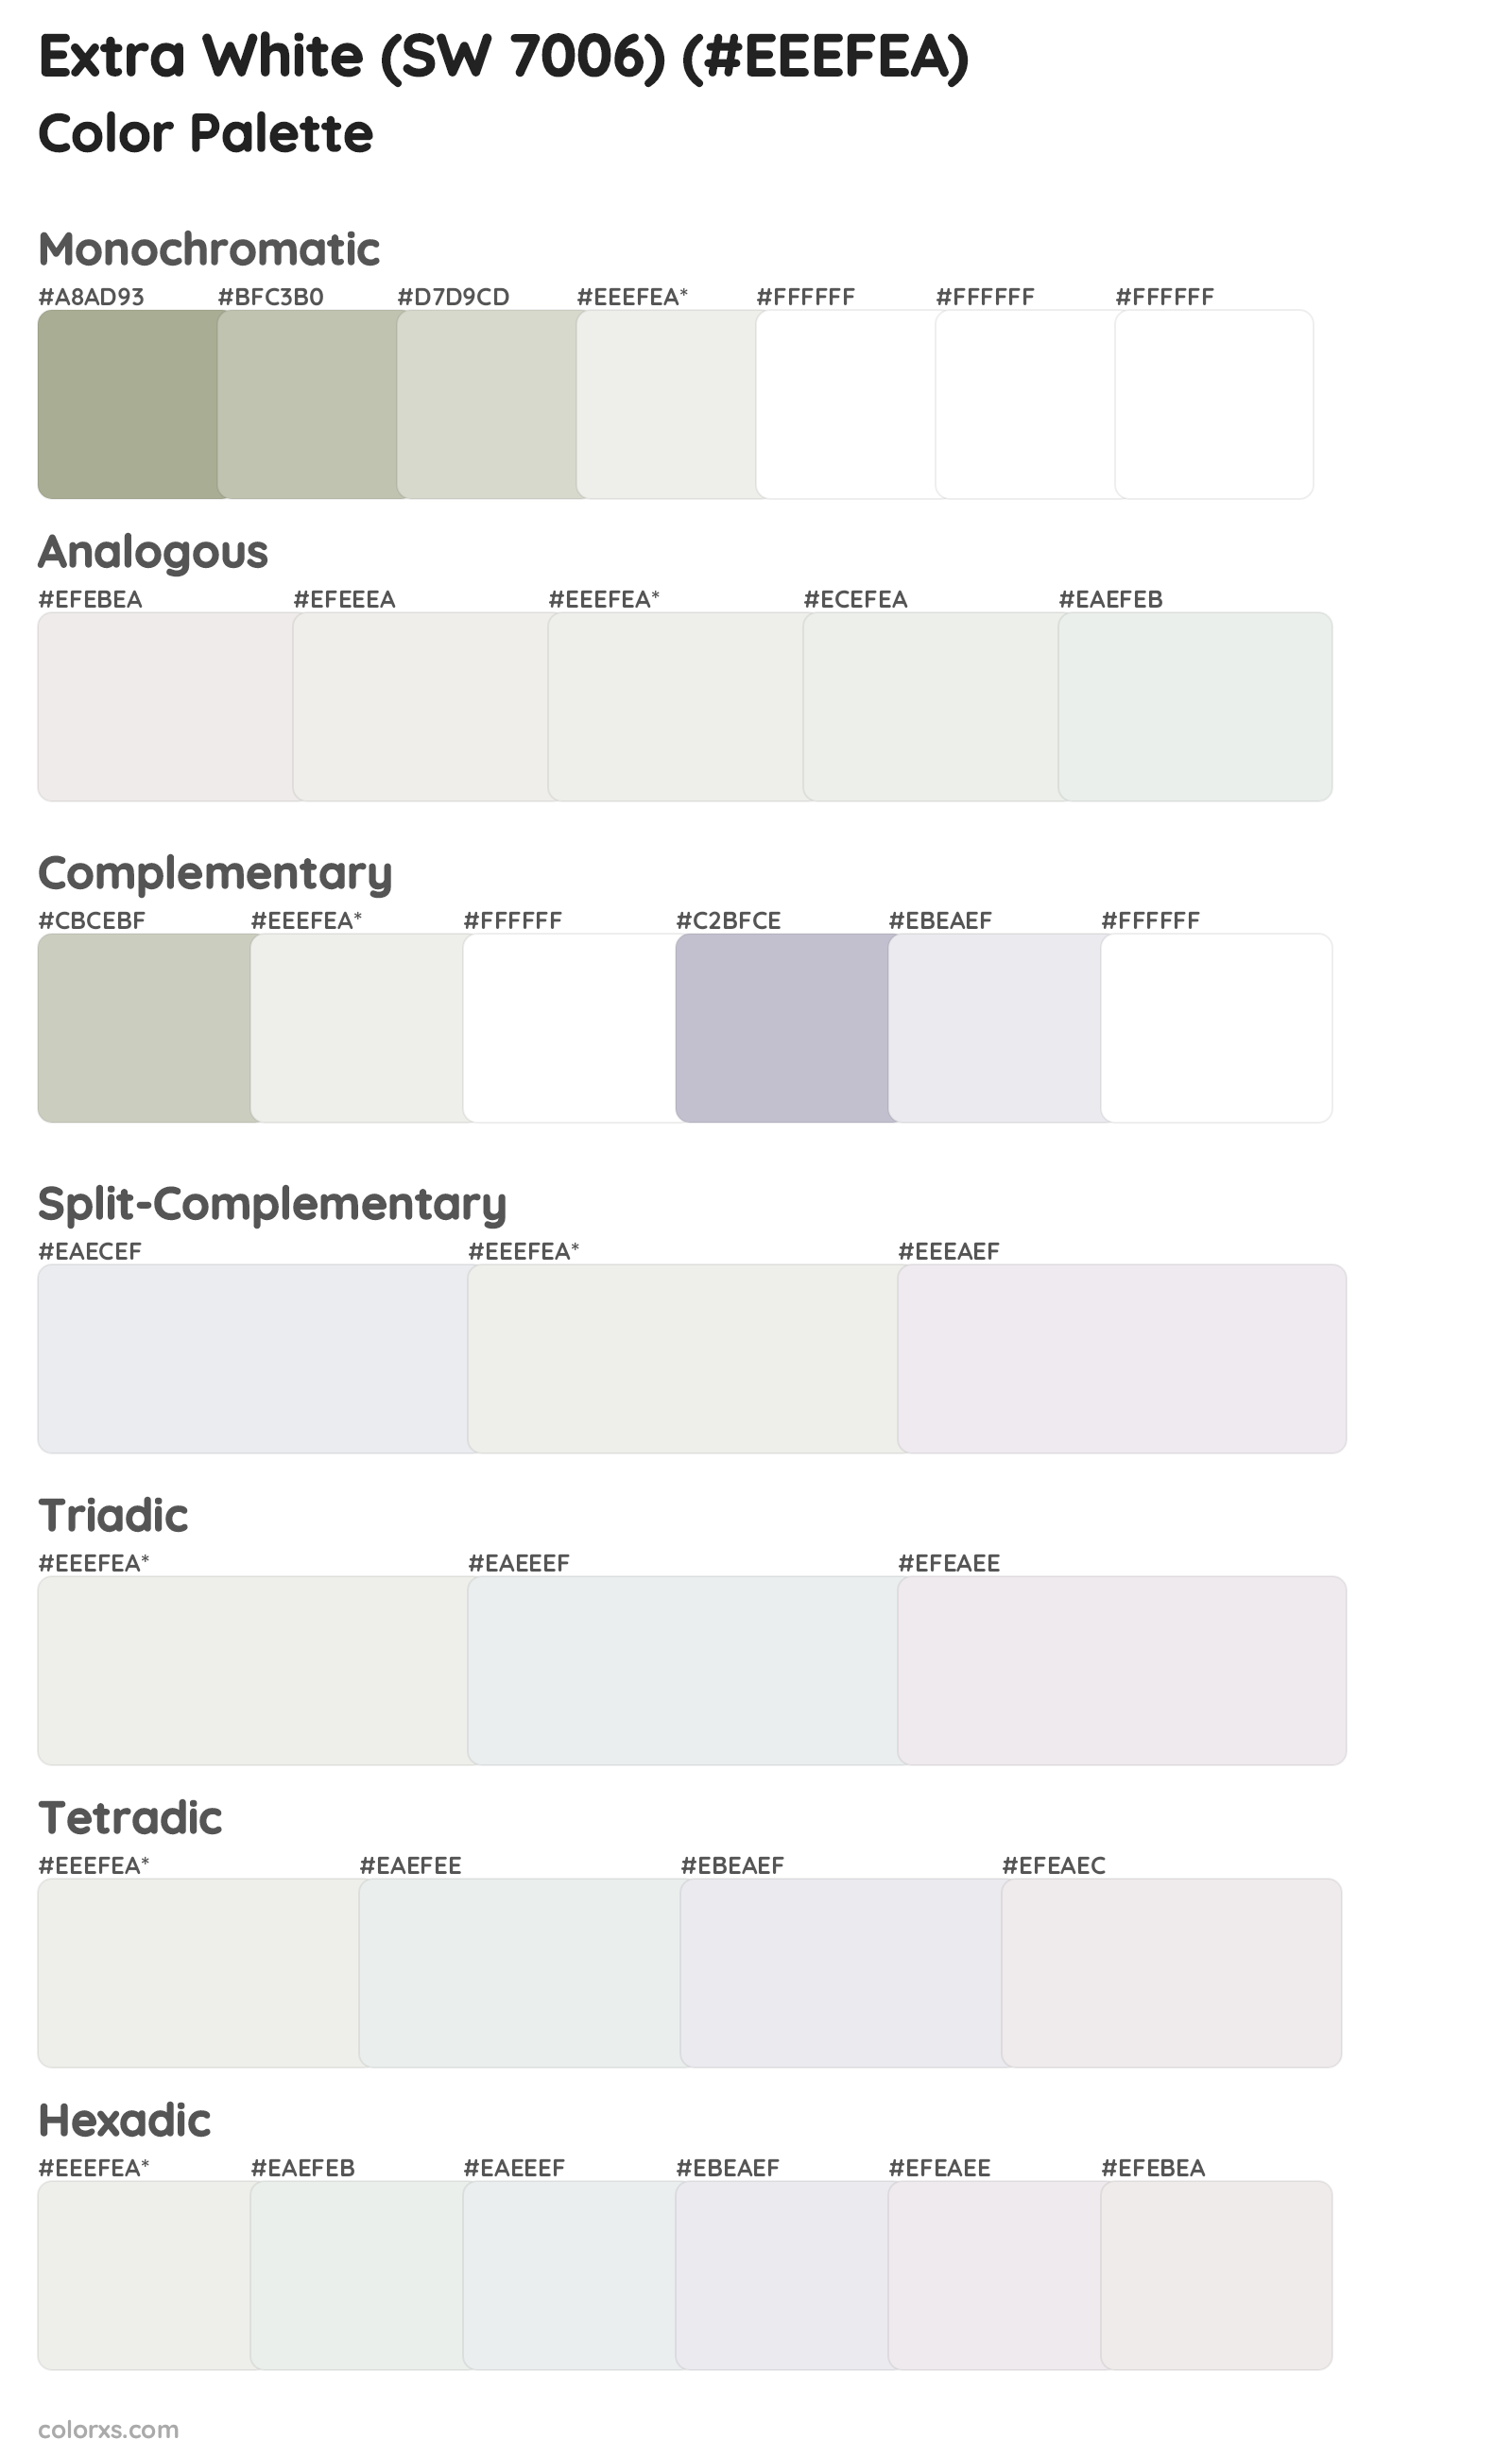 Extra White (SW 7006) Color Scheme Palettes